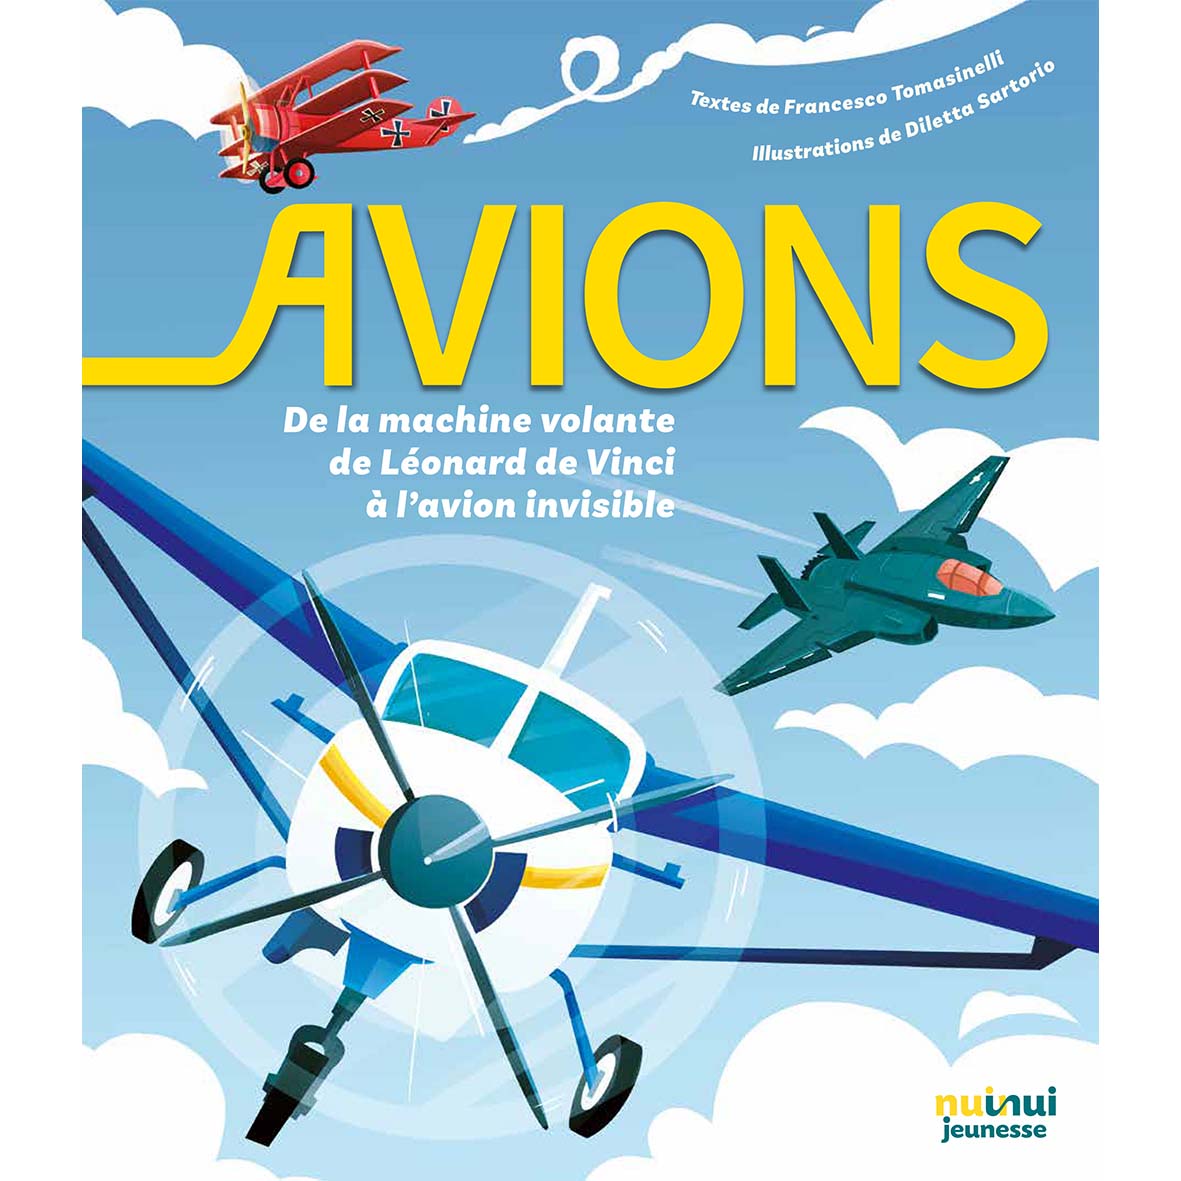 Avions - De la machine volante de Léonard de Vinci à l'avion invisible